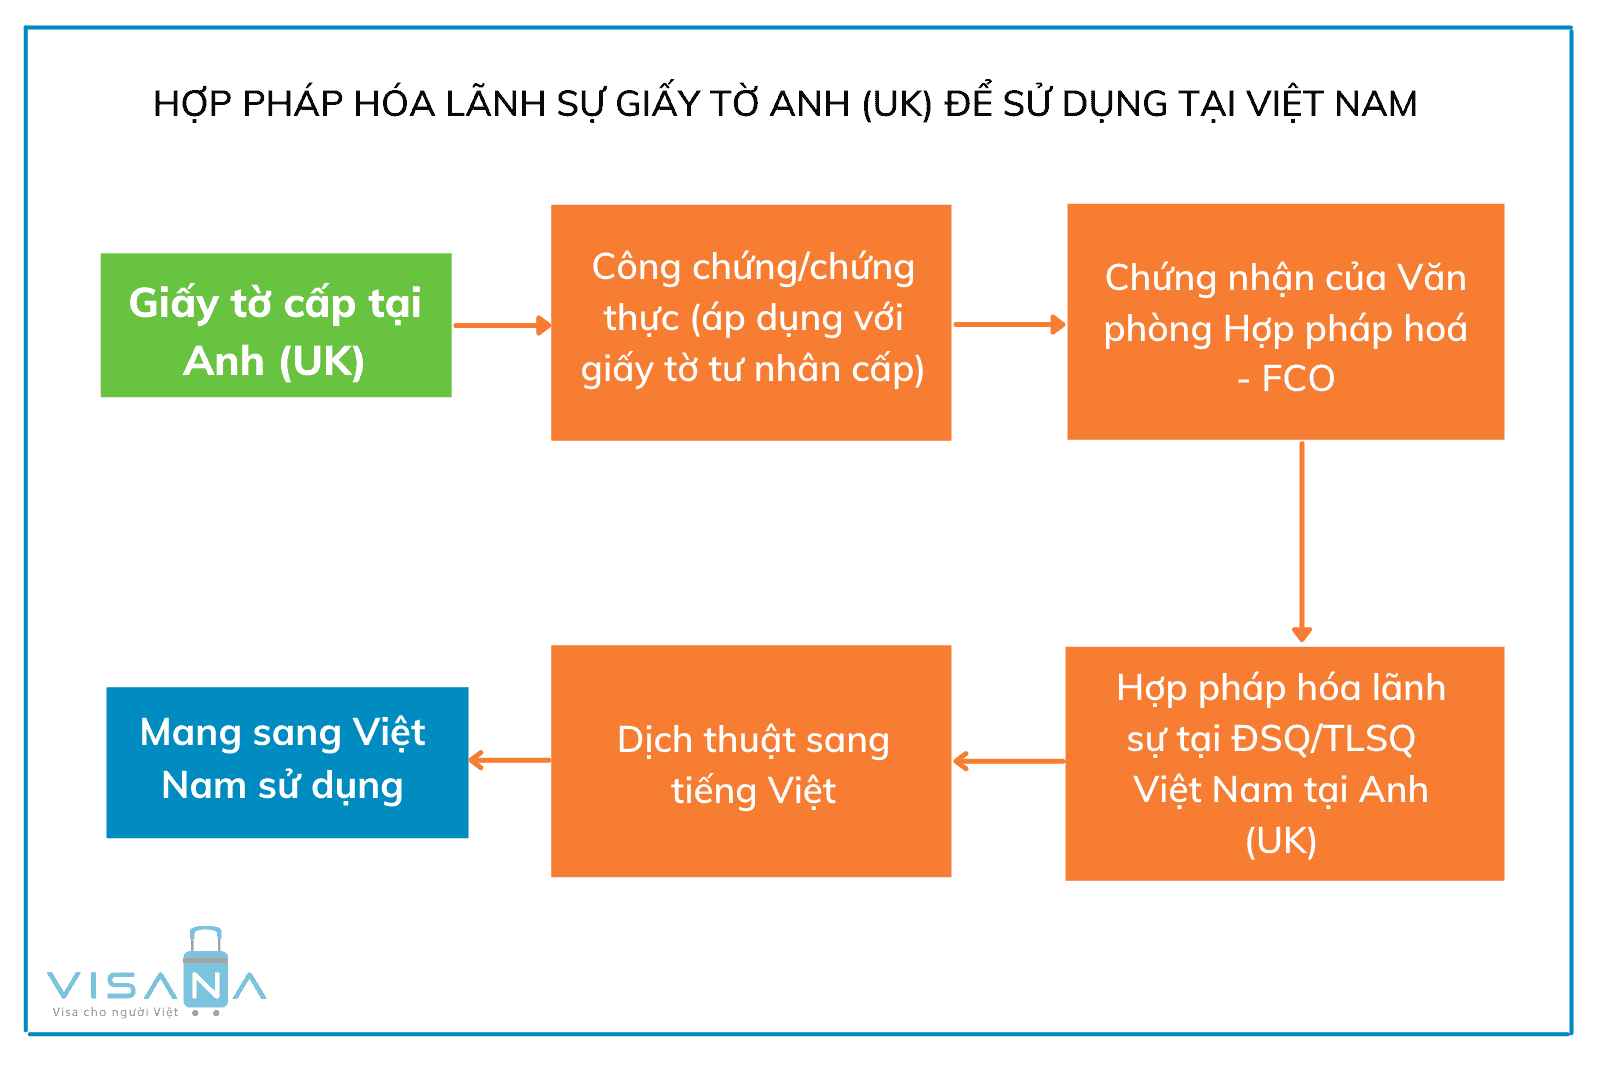 Thủ tục hợp pháp hoá lãnh sự giấy tờ Anh sử dụng tại Việt Nam